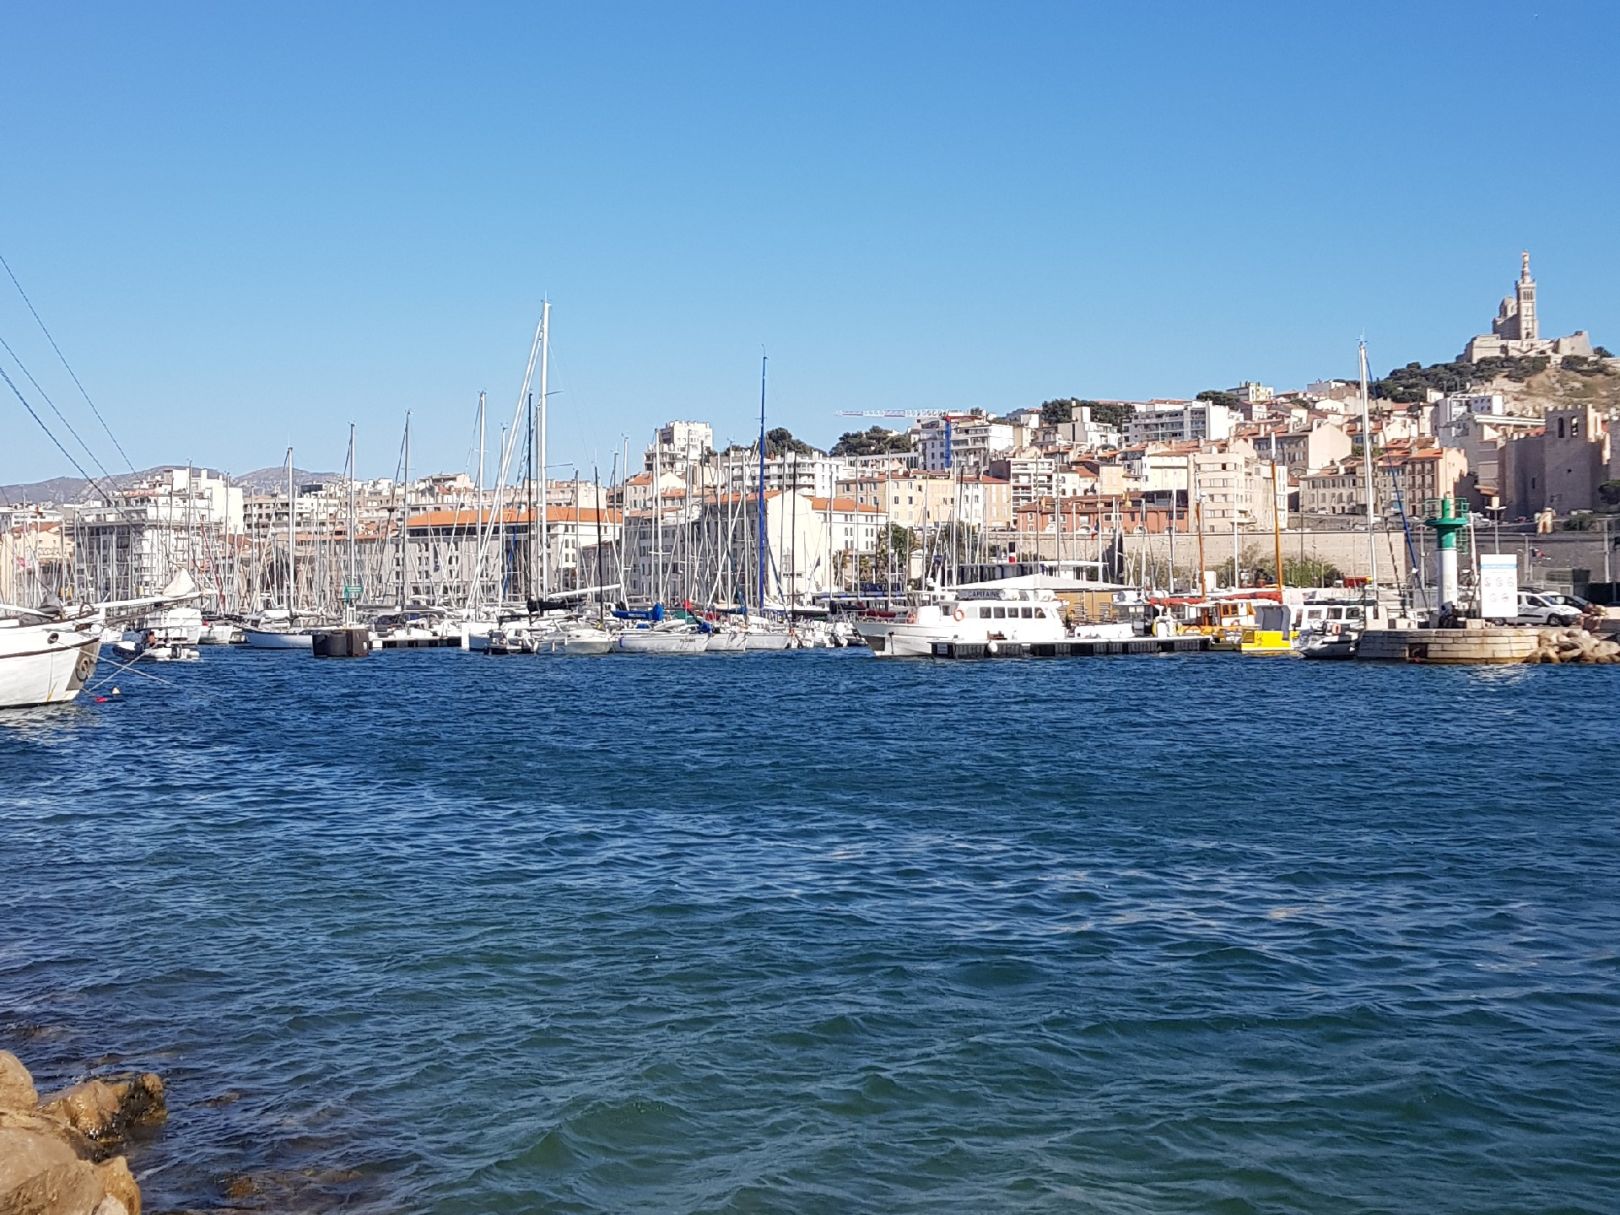 Vieux Port de Marseille angeln